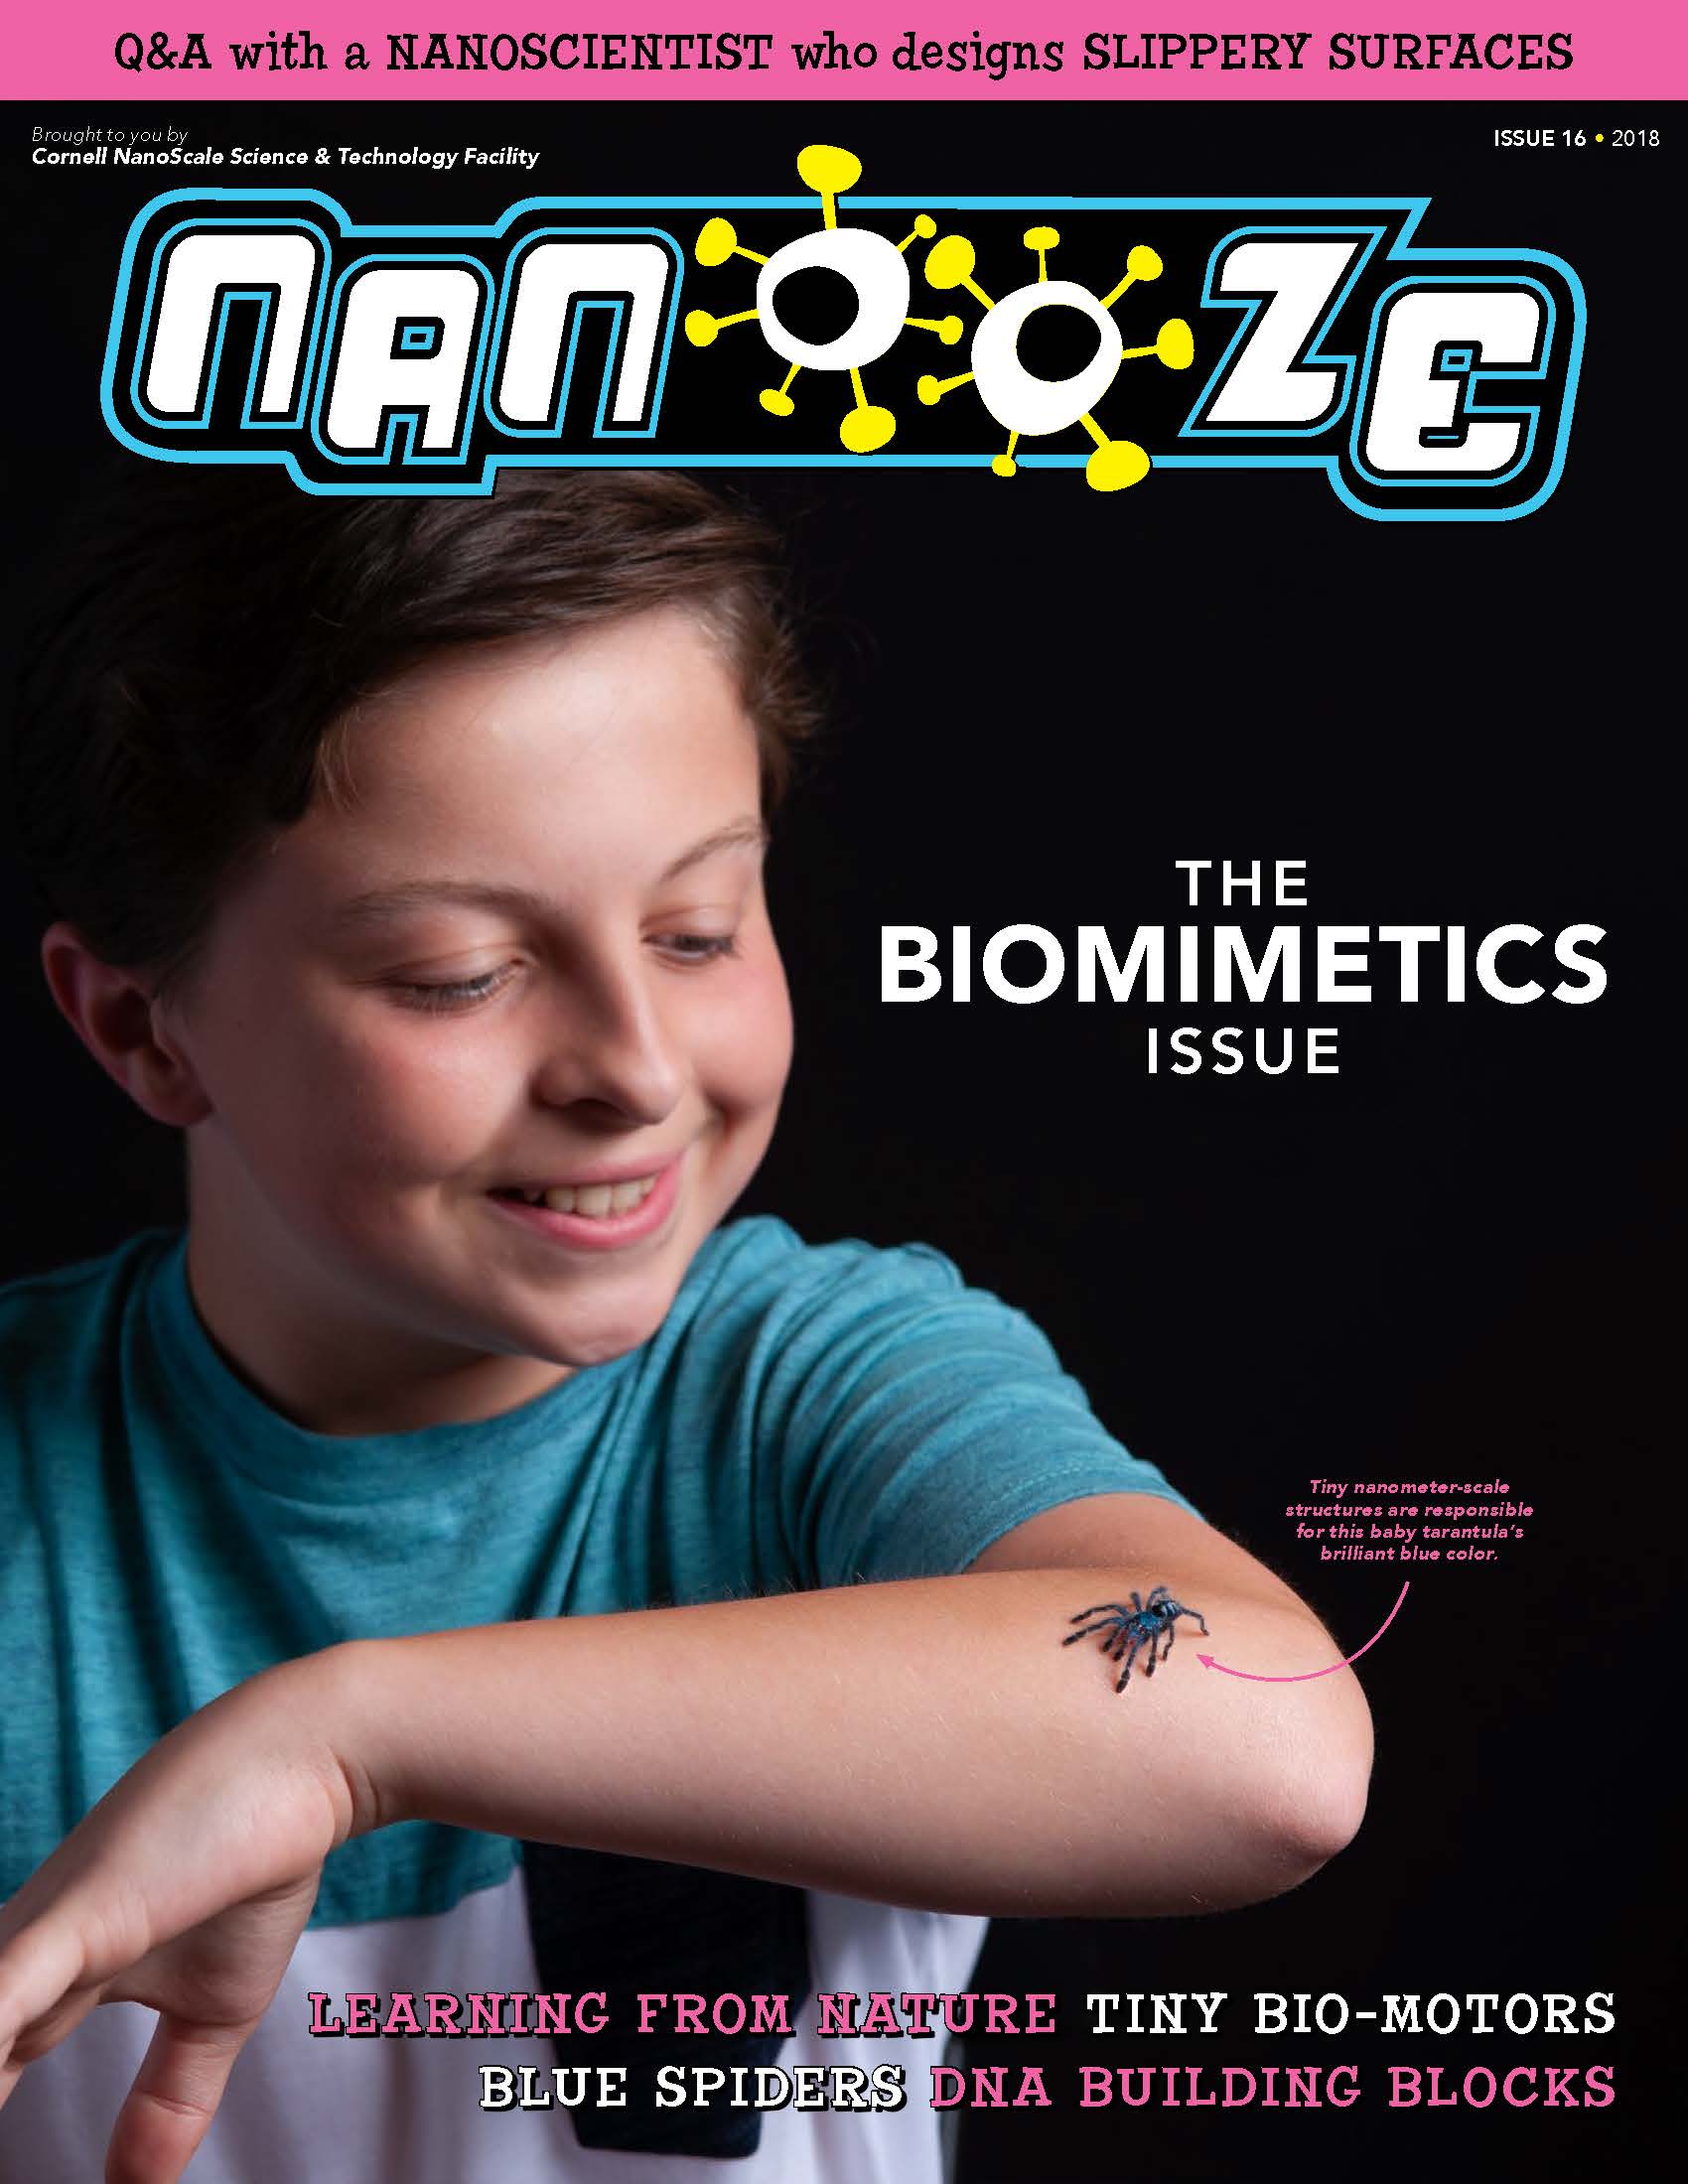 Issue 16: Biomimetics